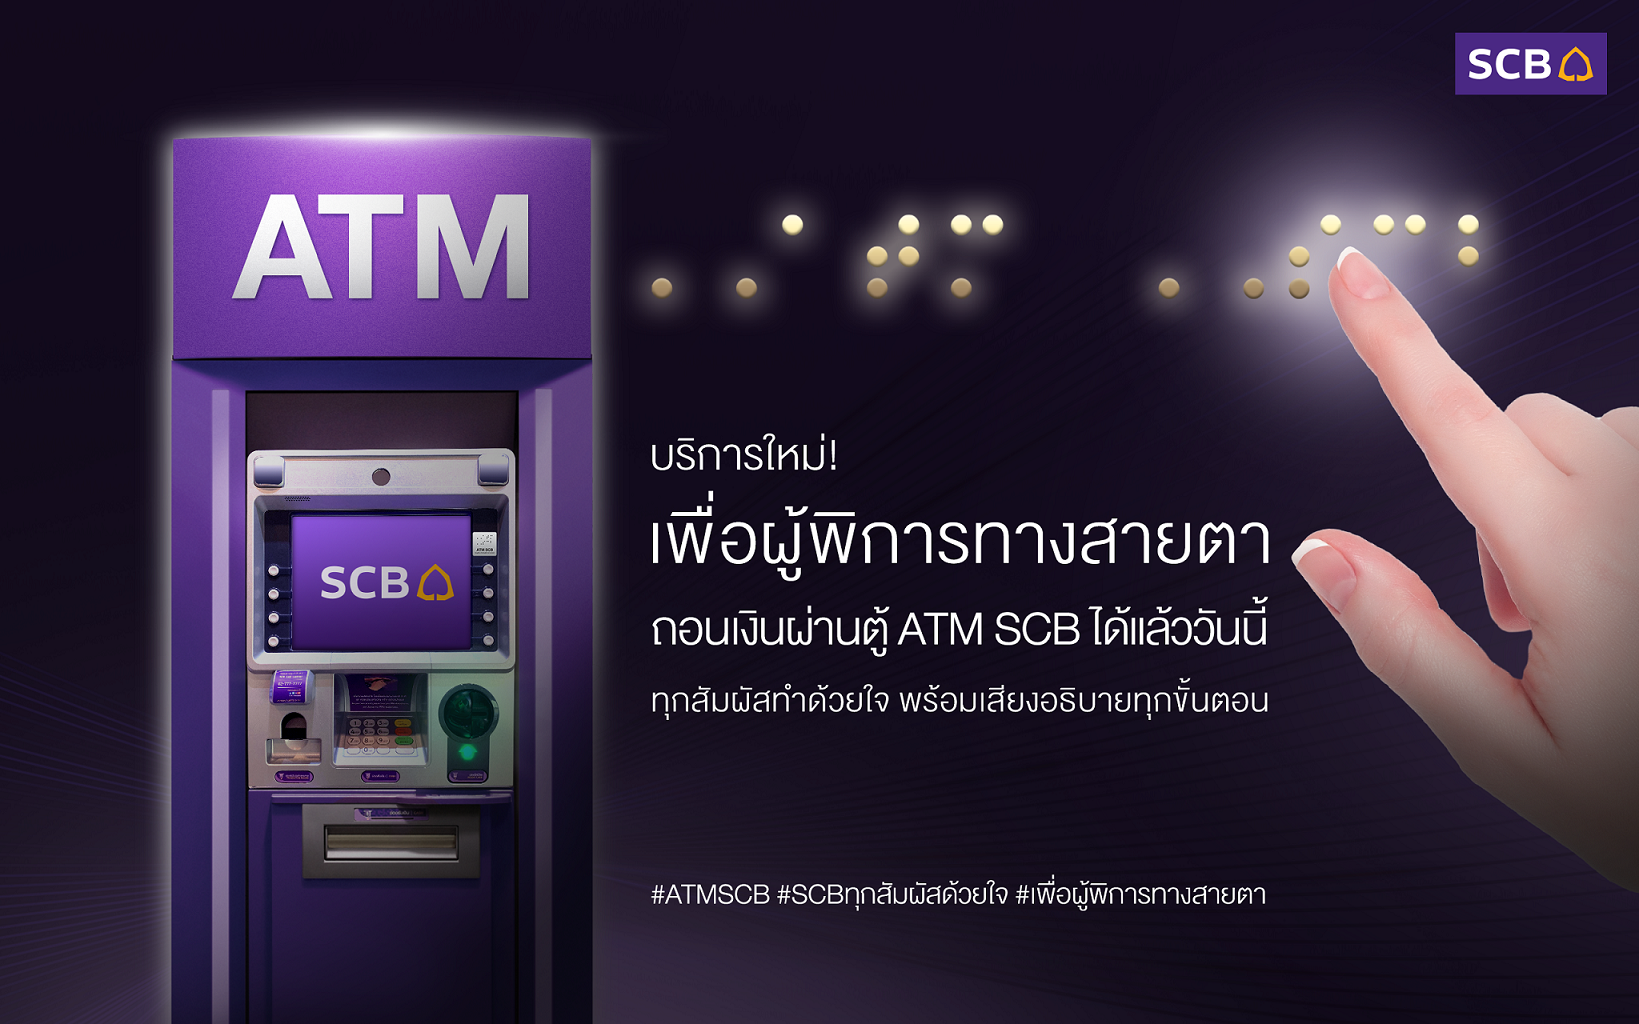 ไทยพาณิชย์ เปิดให้บริการ ATM สำหรับผู้พิการทางสายตา – การเงิน